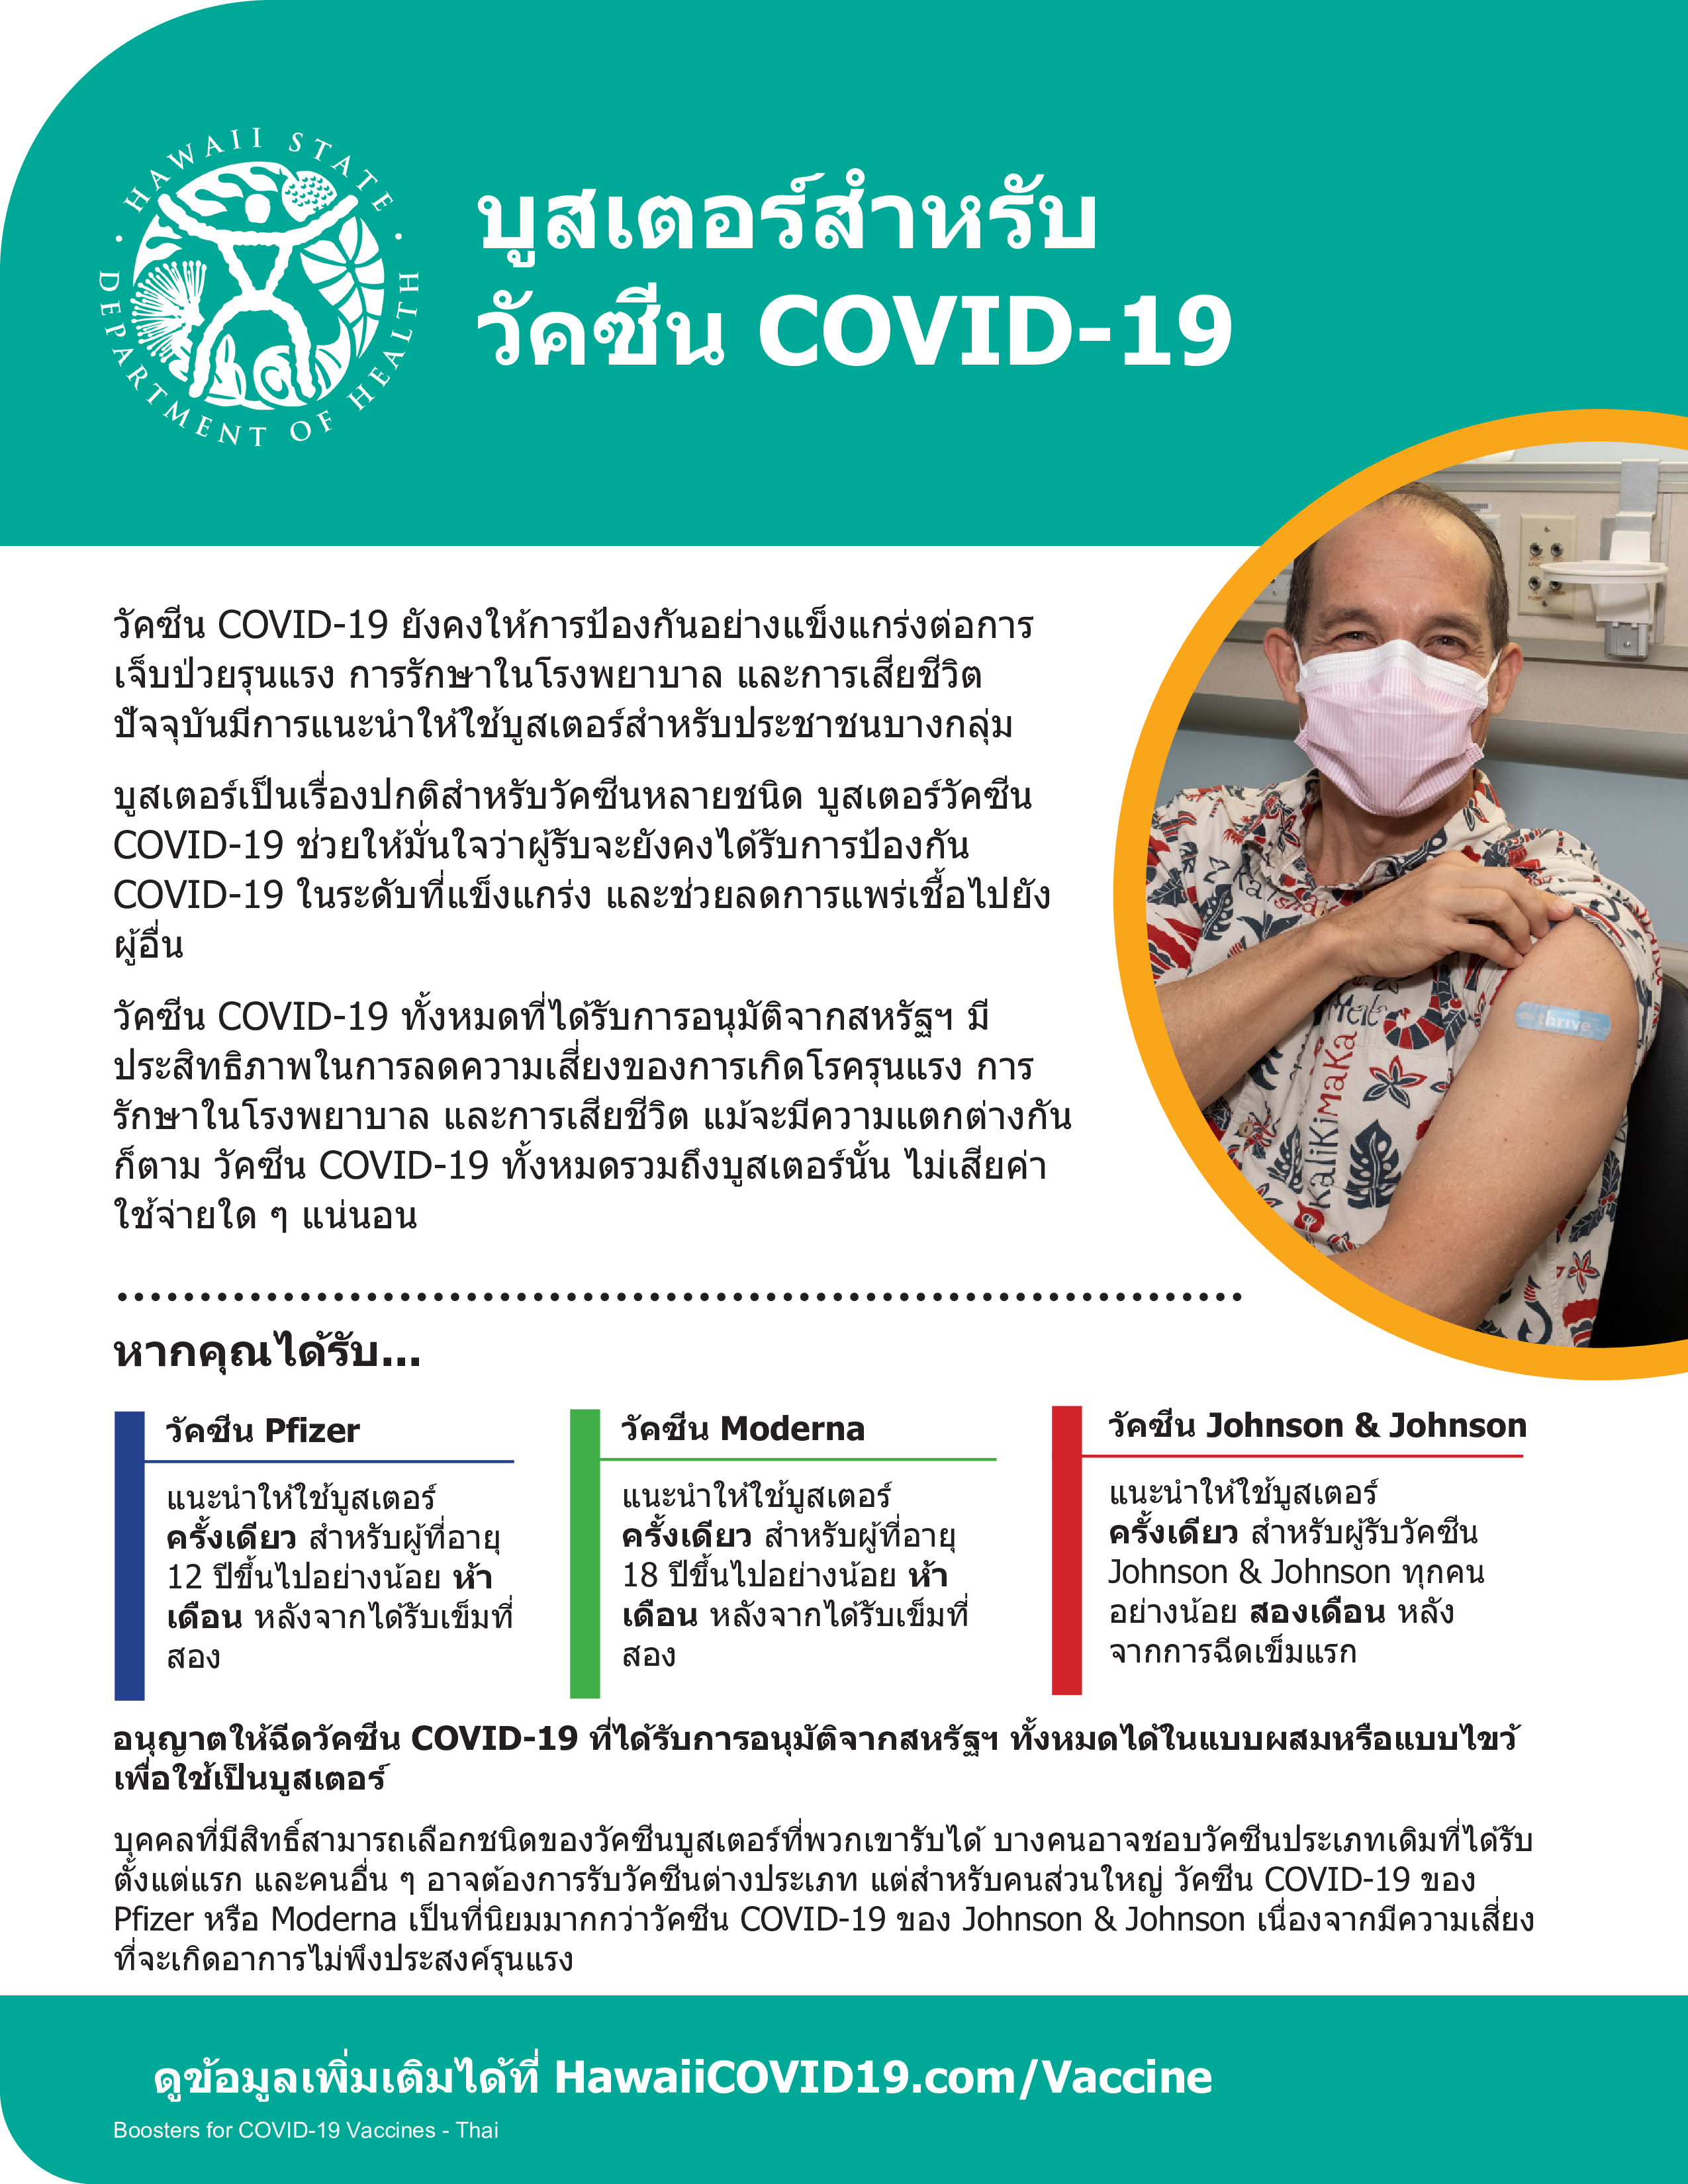 Booster factsheet in Thai.